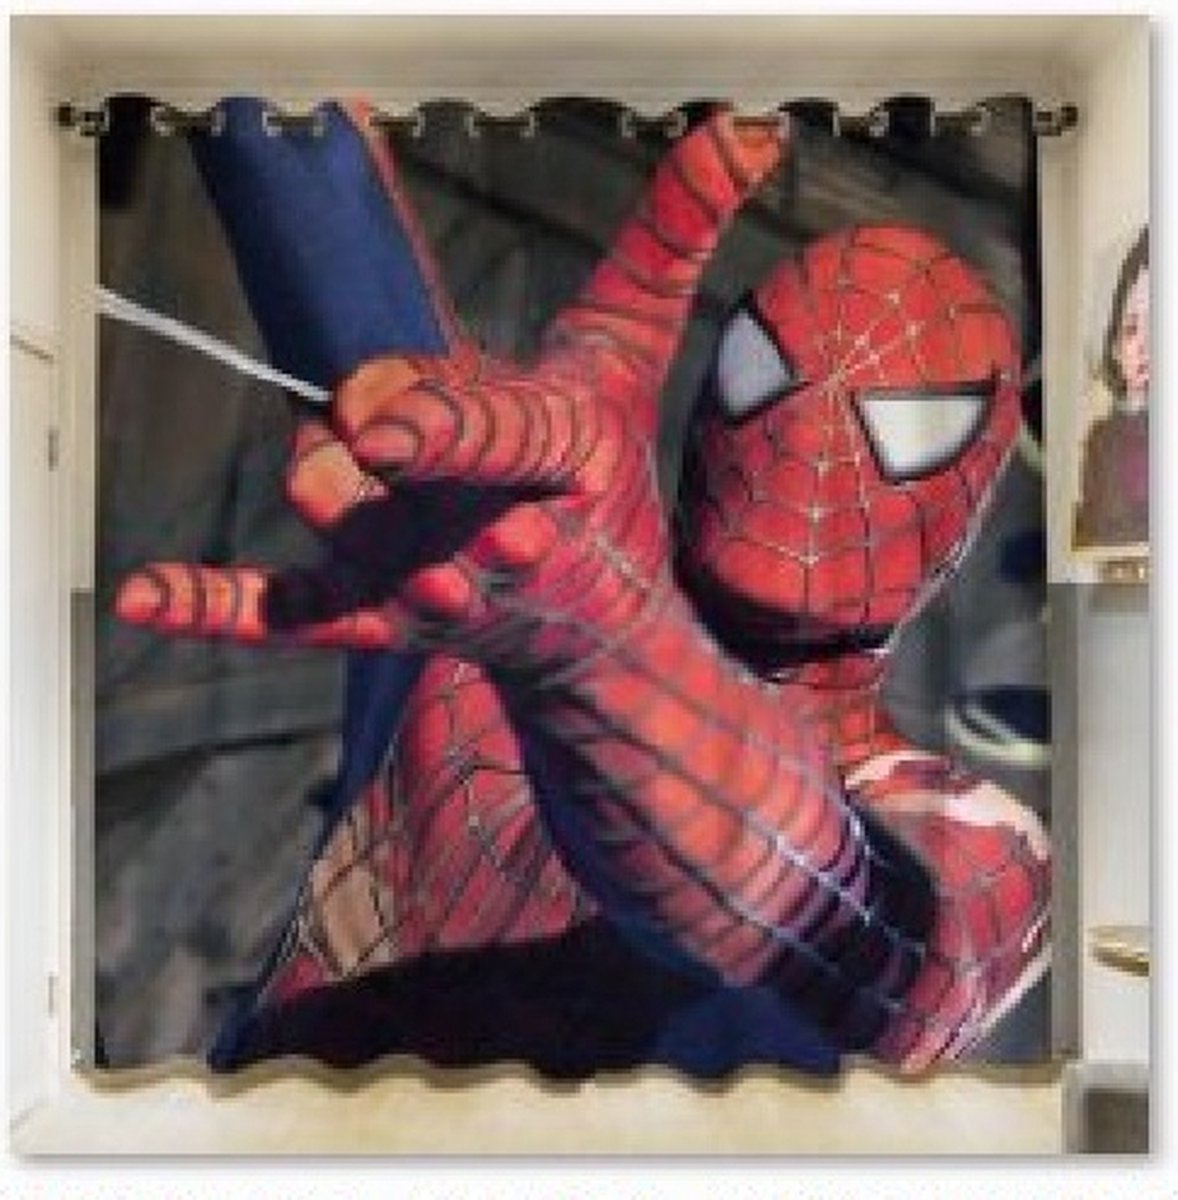 Gordijnen - Spiderman - kant en klaar - 140x100 of eigen foto ) | bol.com